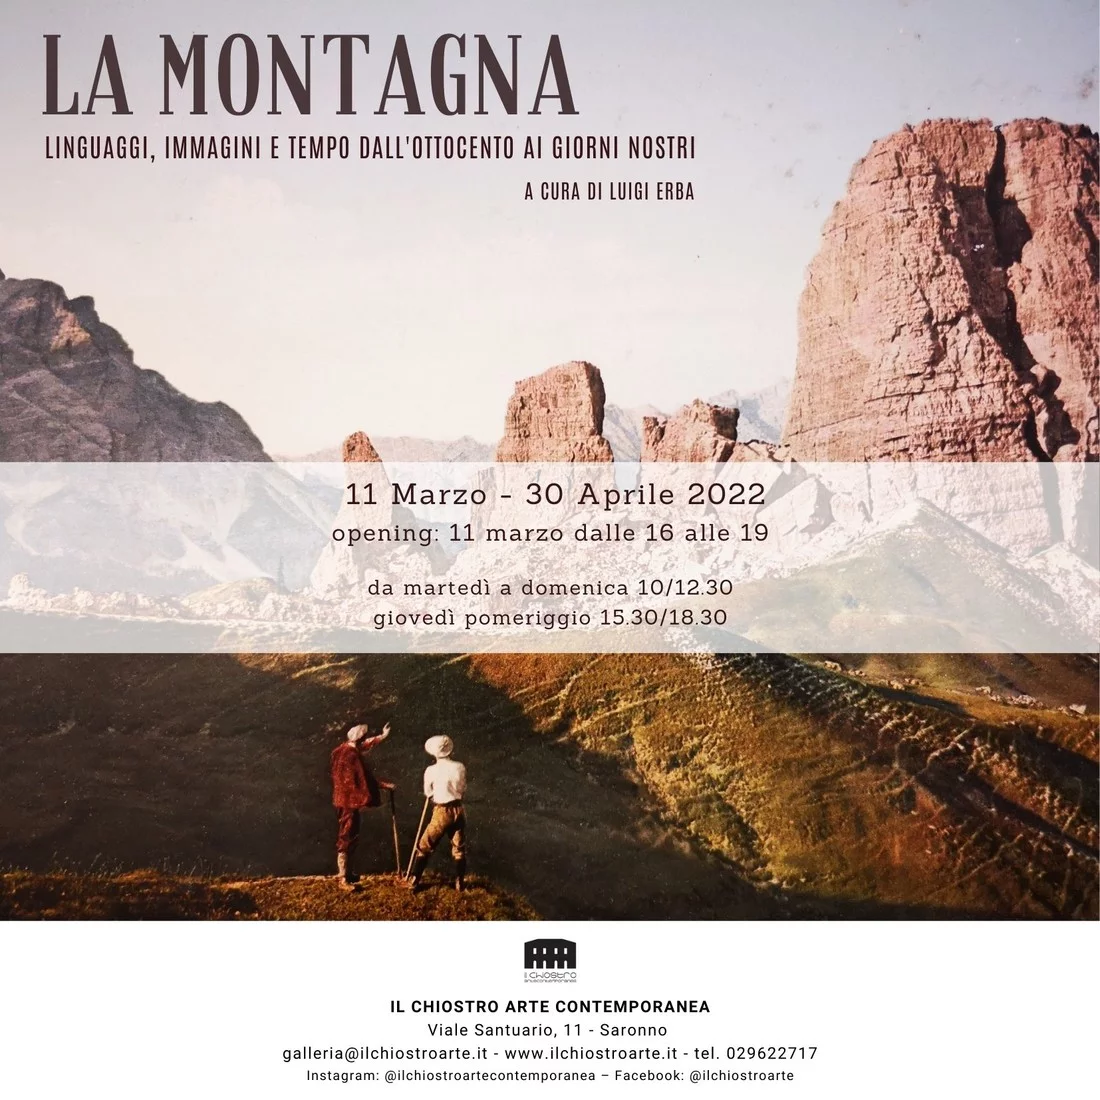 La Montagna: linguaggi, immagini e tempo dall’Ottocento ai giorni nostri